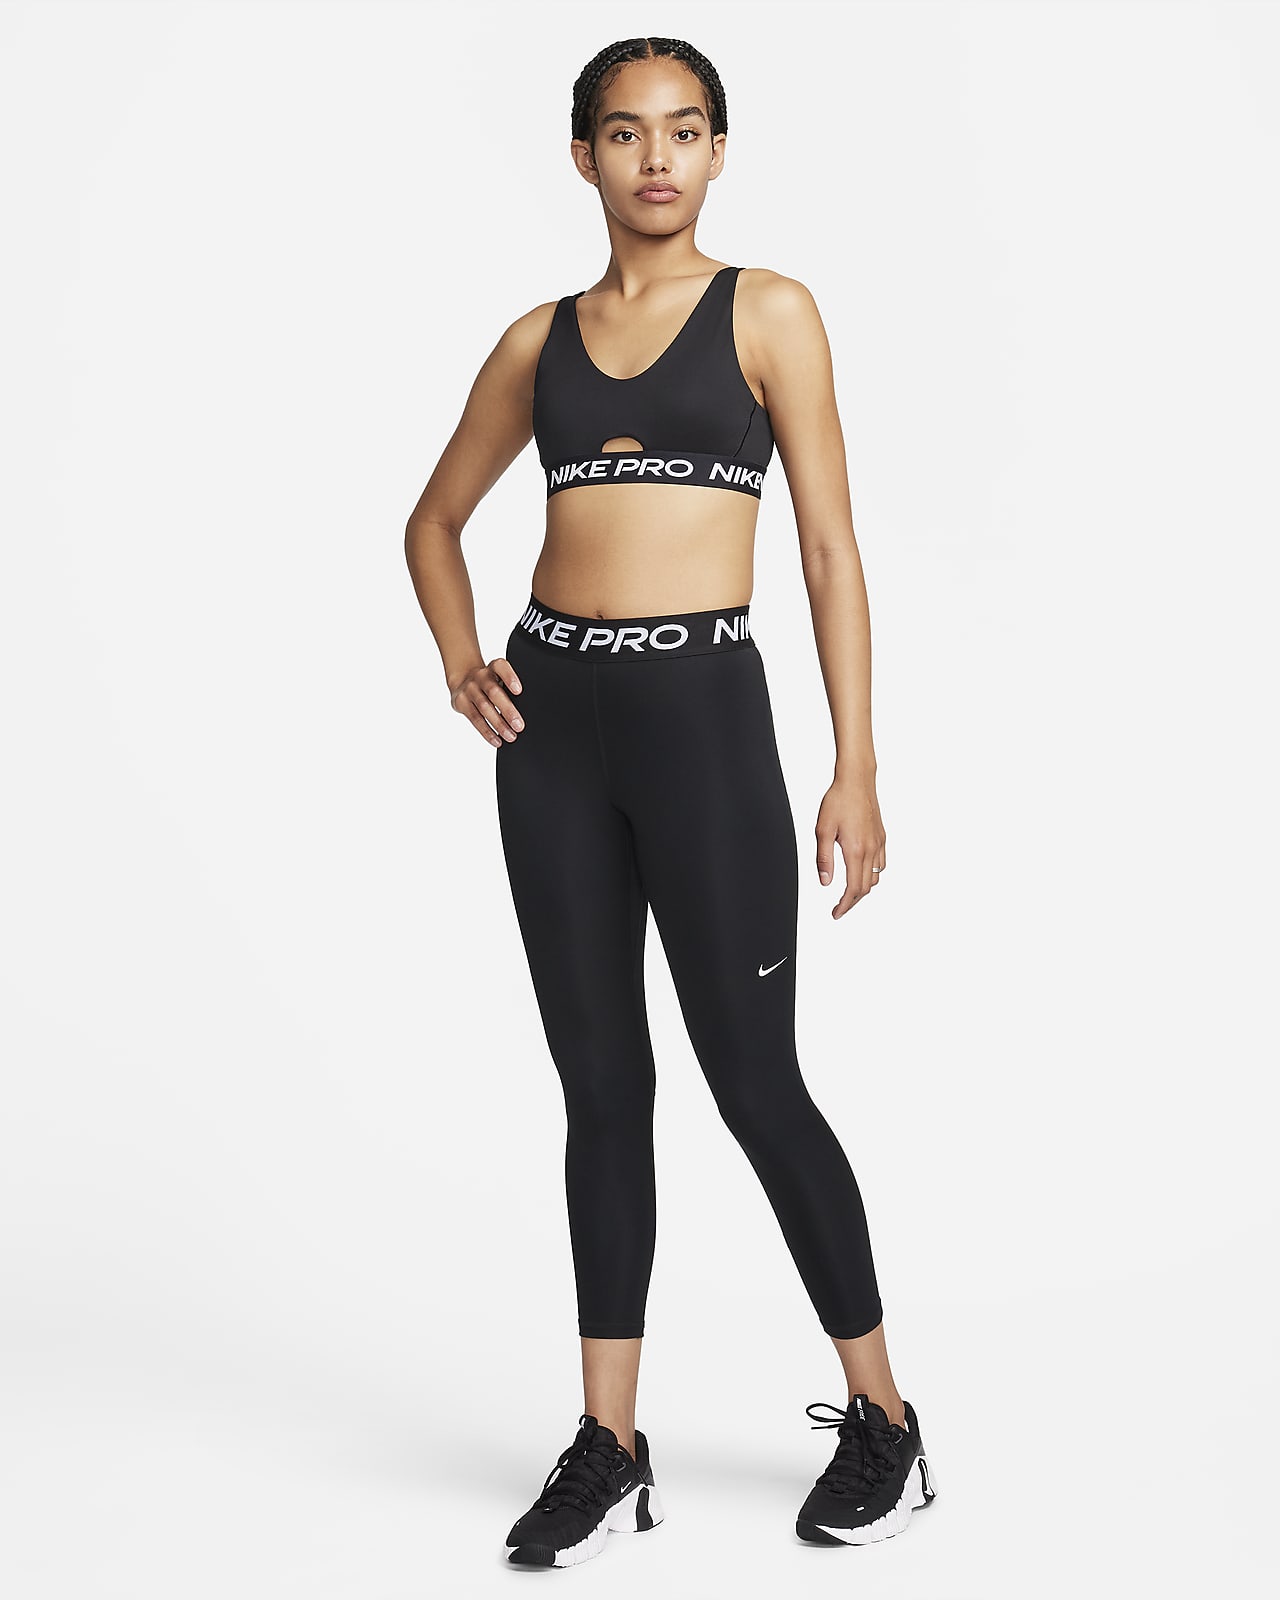 Nike, Intimates & Sleepwear, Nike Indy Sport Bra Carbon Plus Size 2x New  Wt